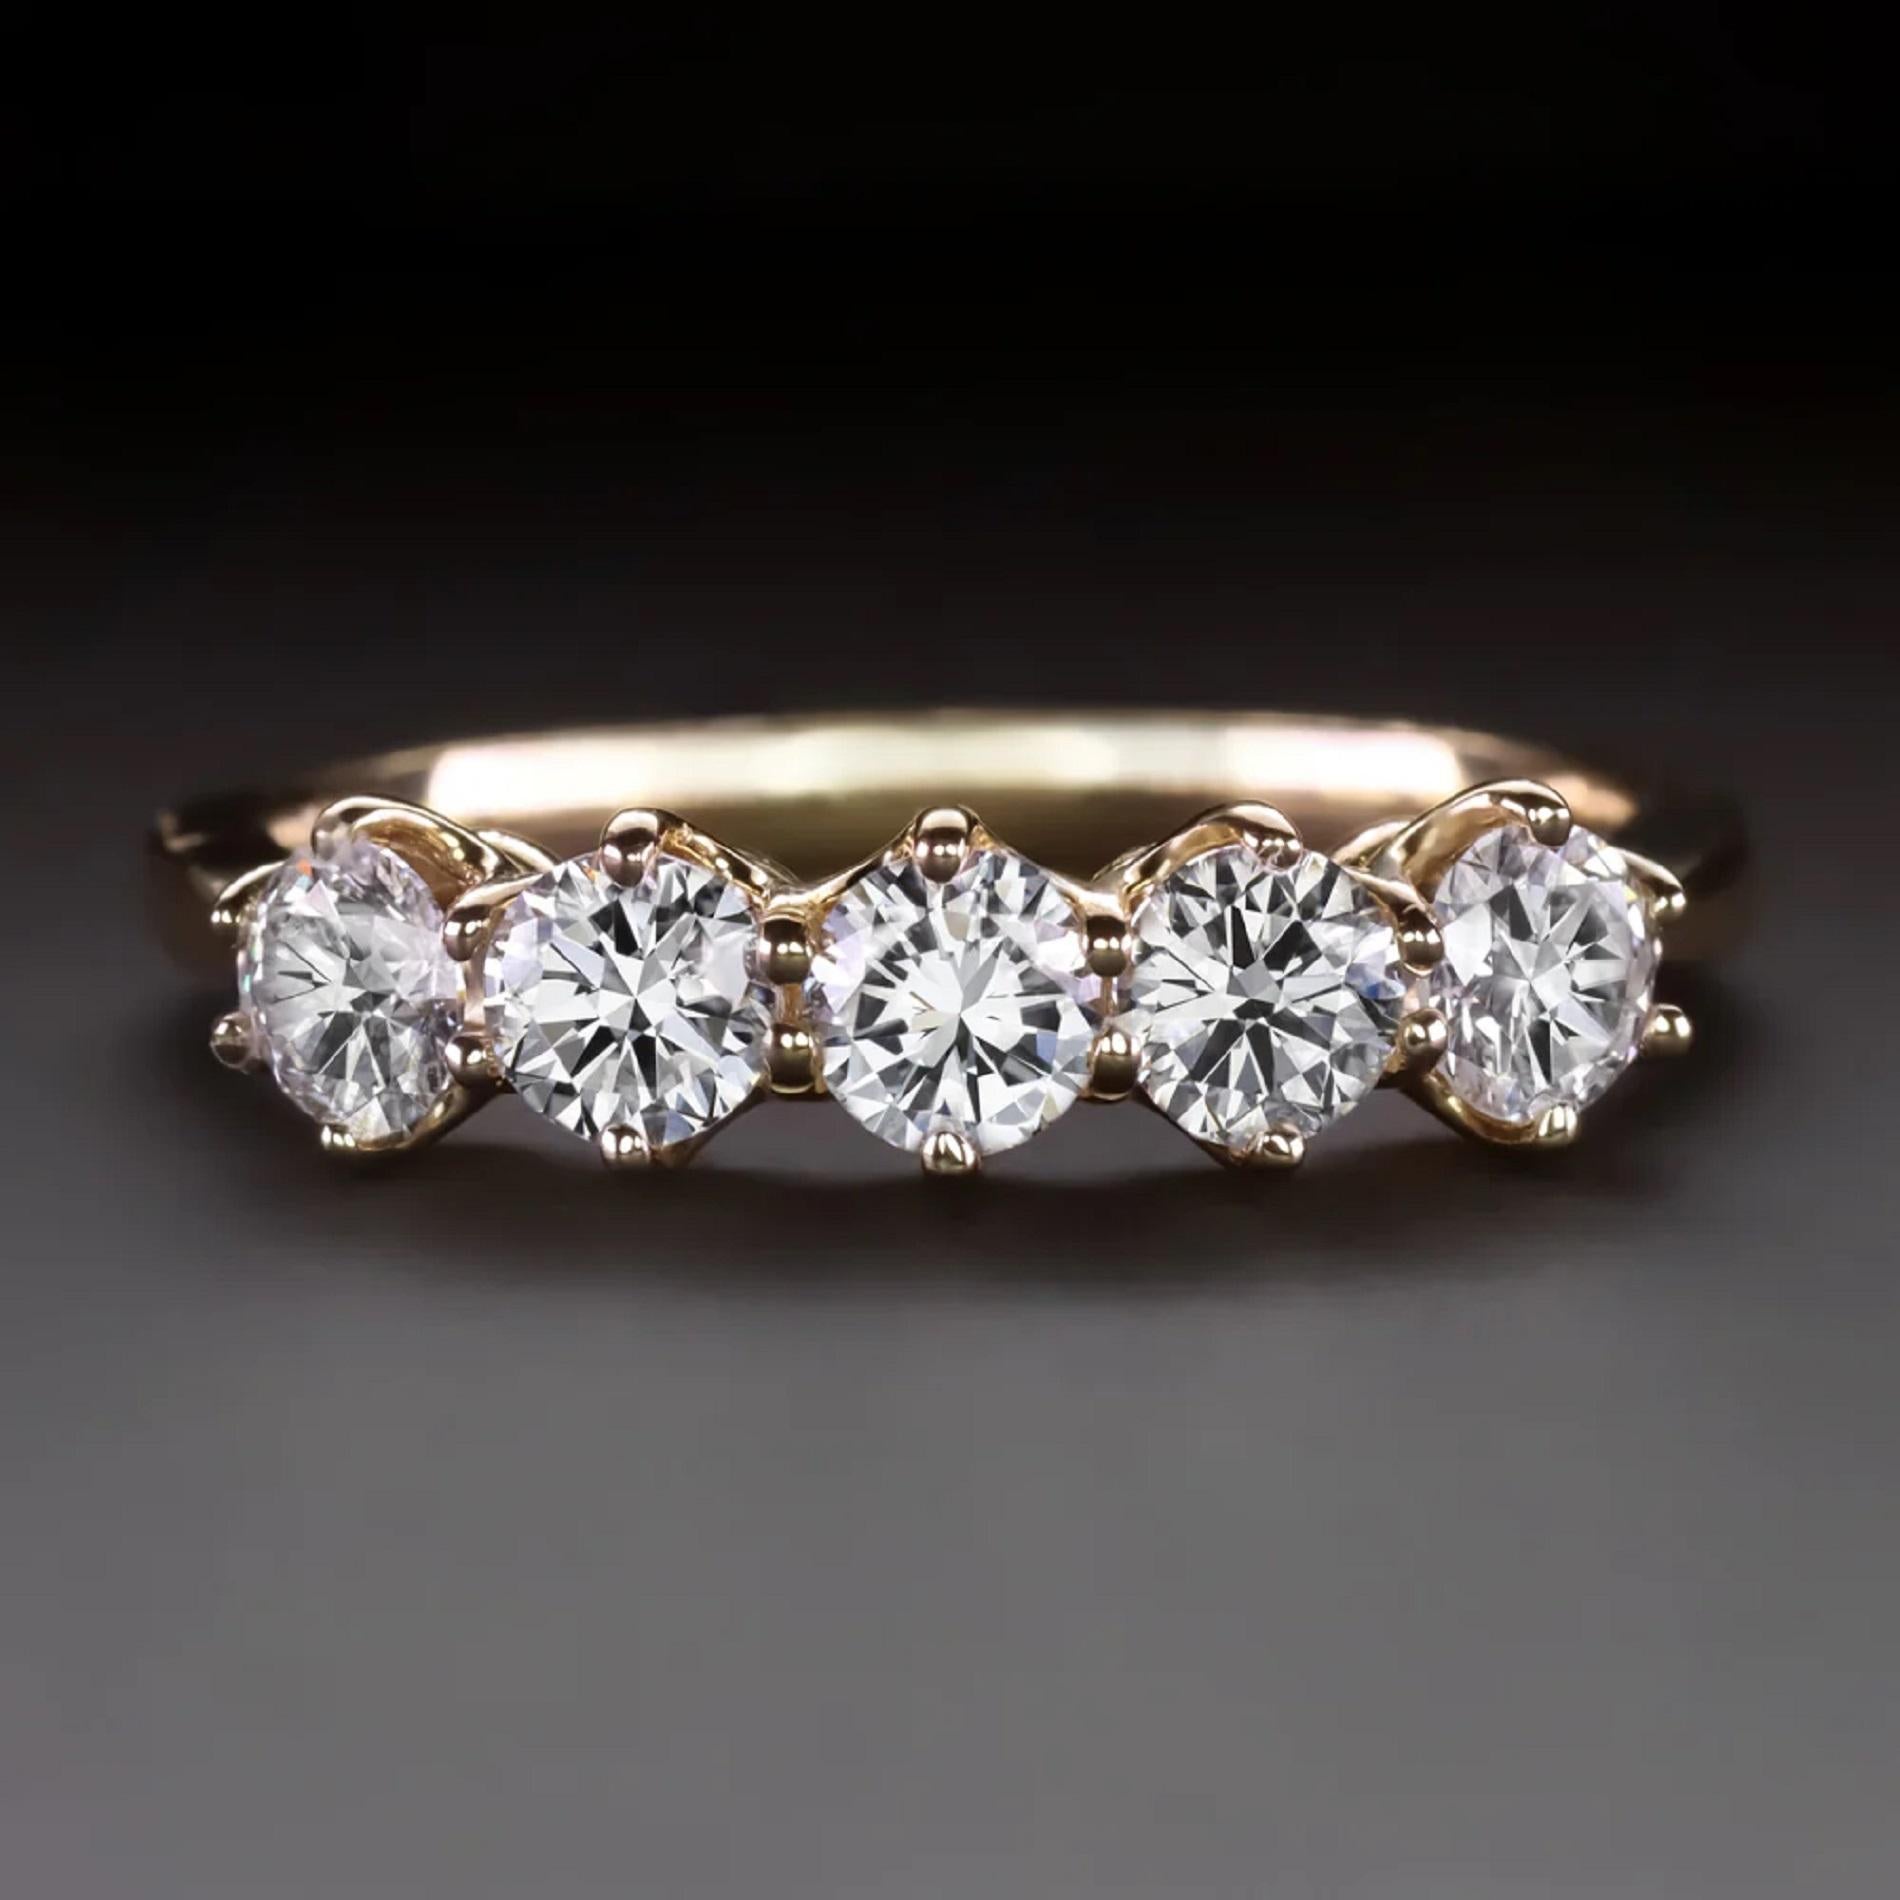 Le bracelet en diamant à 5 pierres présente 1 carat de diamants étincelants sertis dans un design classique en or jaune 14k. Les décors en boutons d'or de style victorien ajoutent une touche de charme et de romantisme vintage tout en conservant une